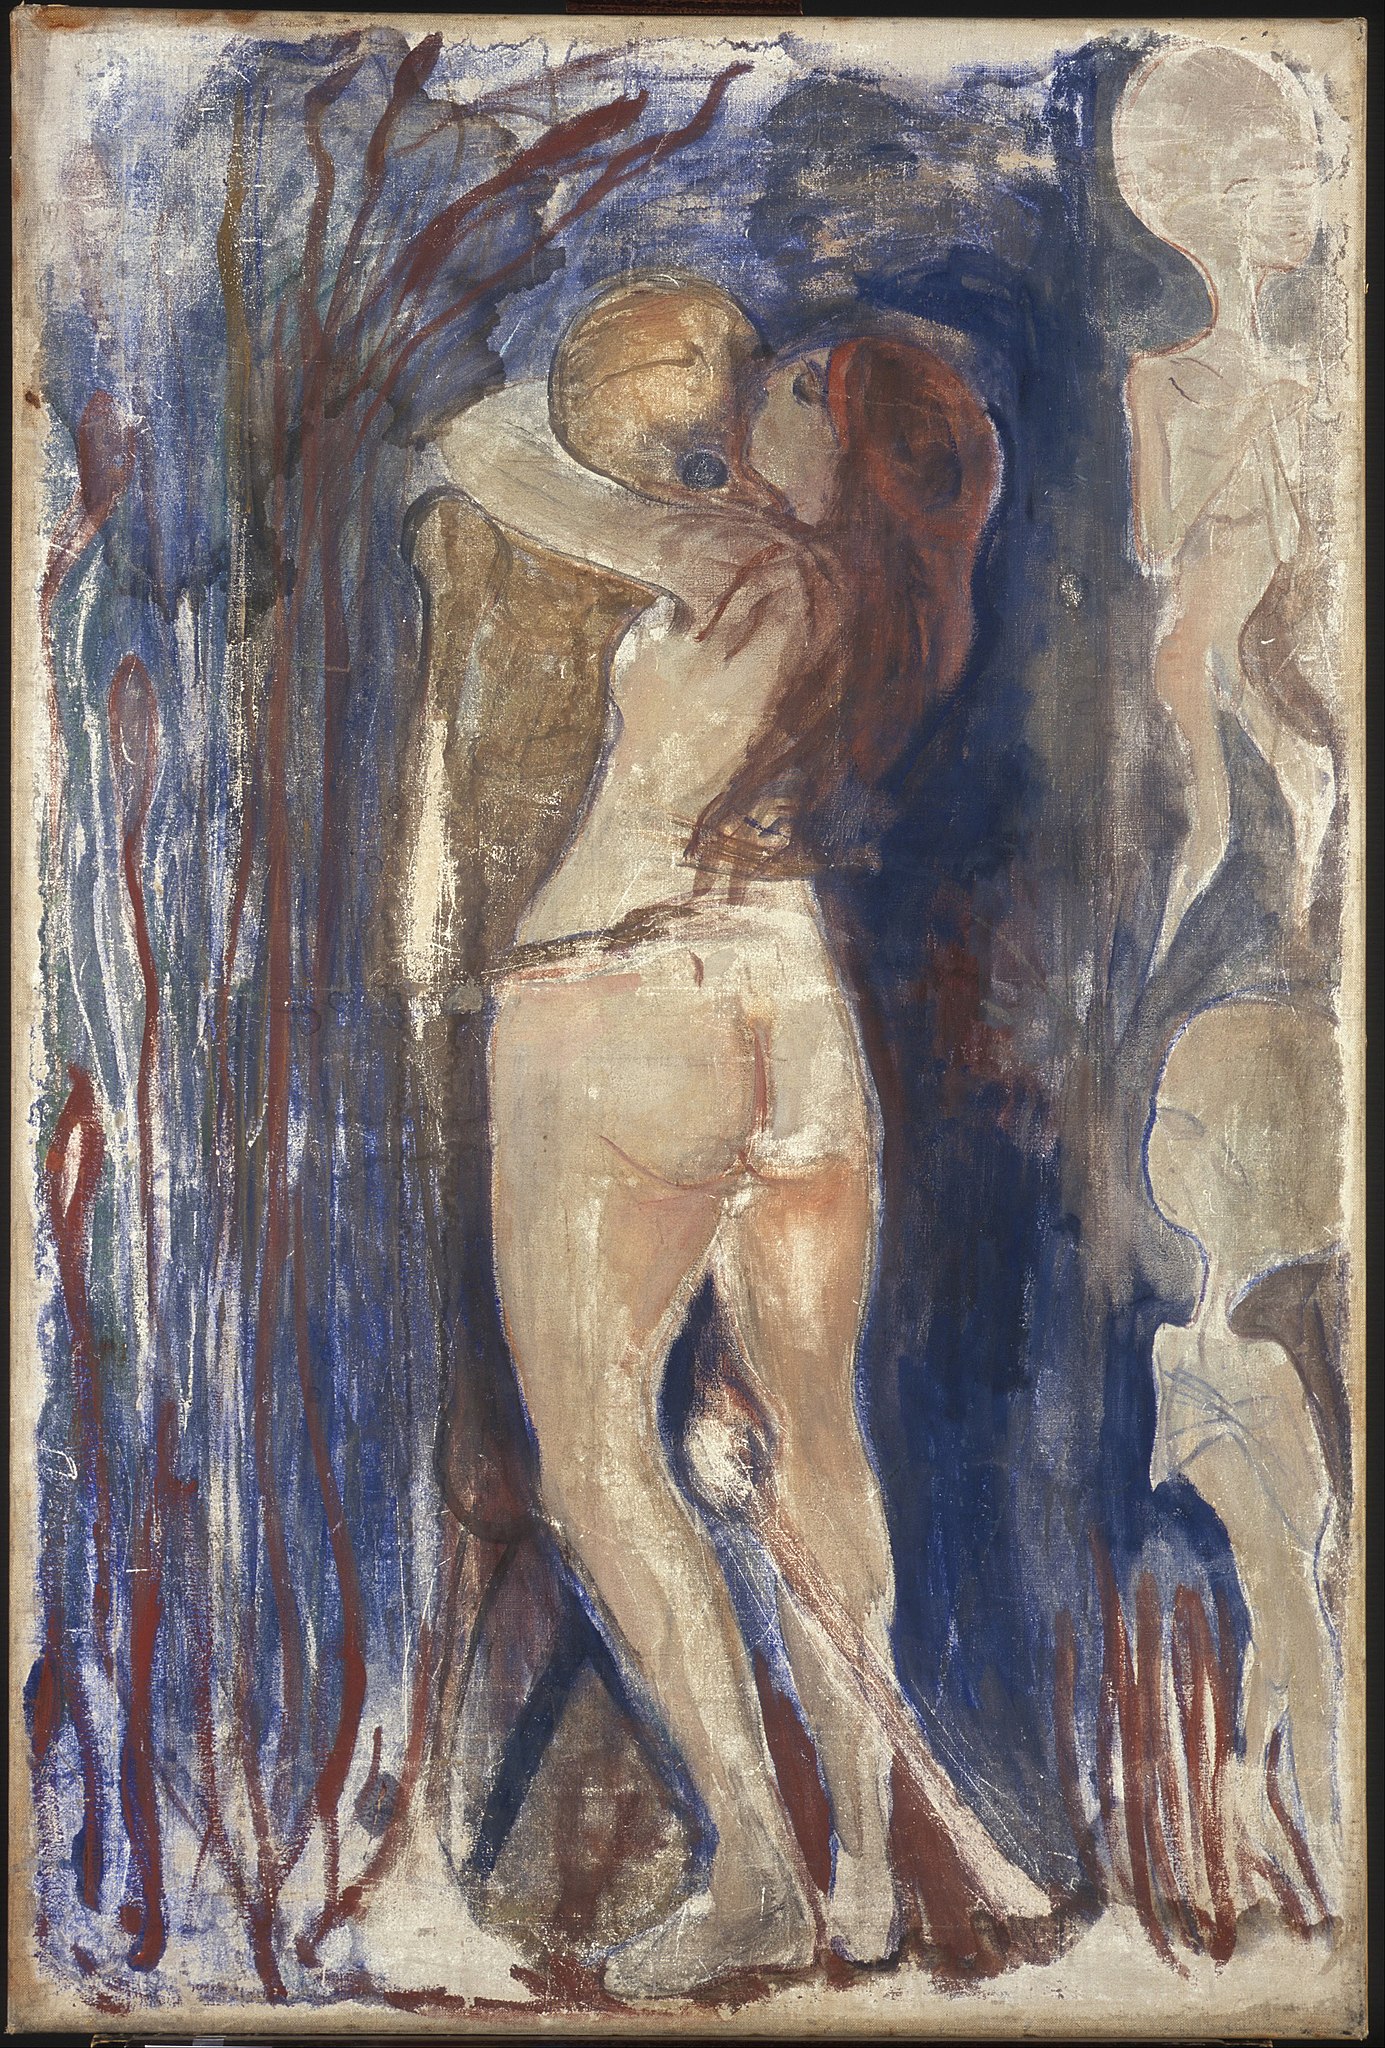 죽음과 삶(Death and Life) by Edvard Munch - 1894 - 86 x 128 cm 